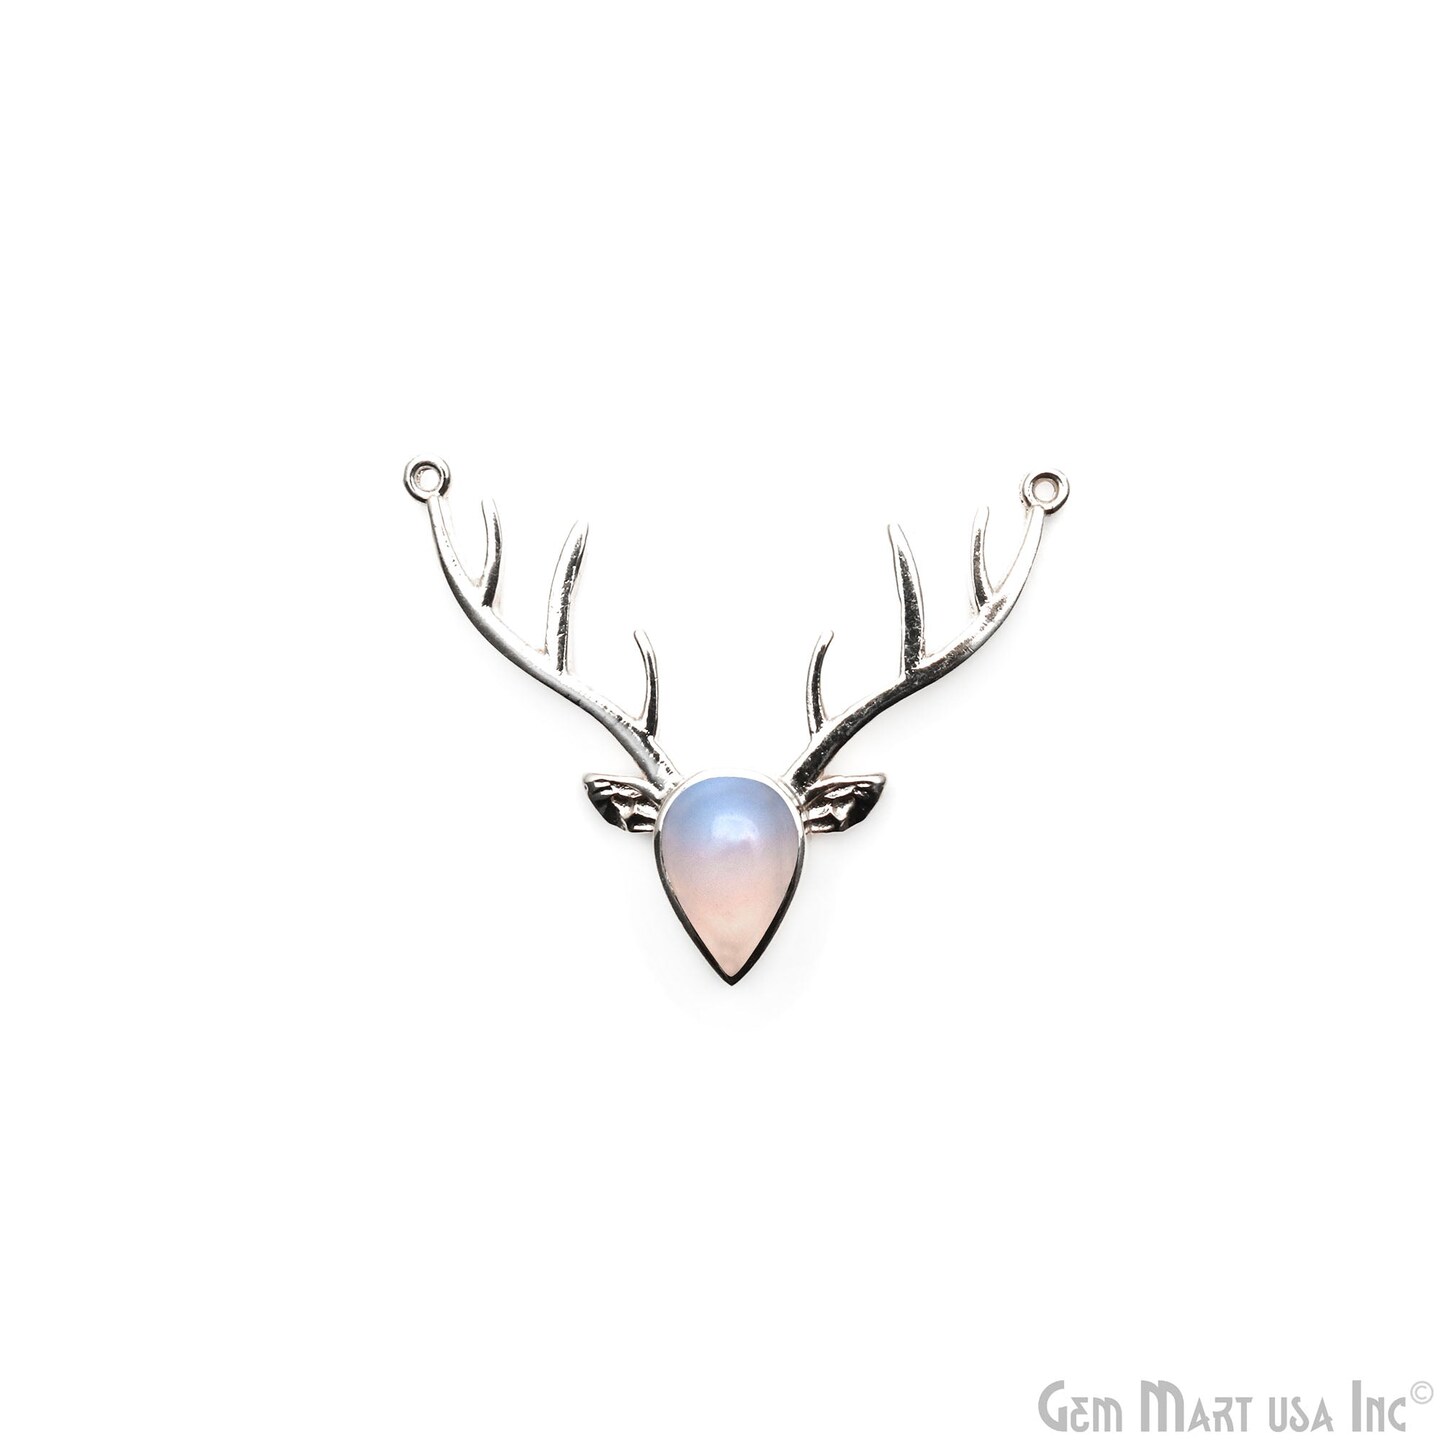 Reindeer Horn Necklace Pendant, Labradorite Gemstone Reindeer Head, Antlers/ Horns, 42x14mm, Horn Necklace, GemMartUSA (LB-50520)